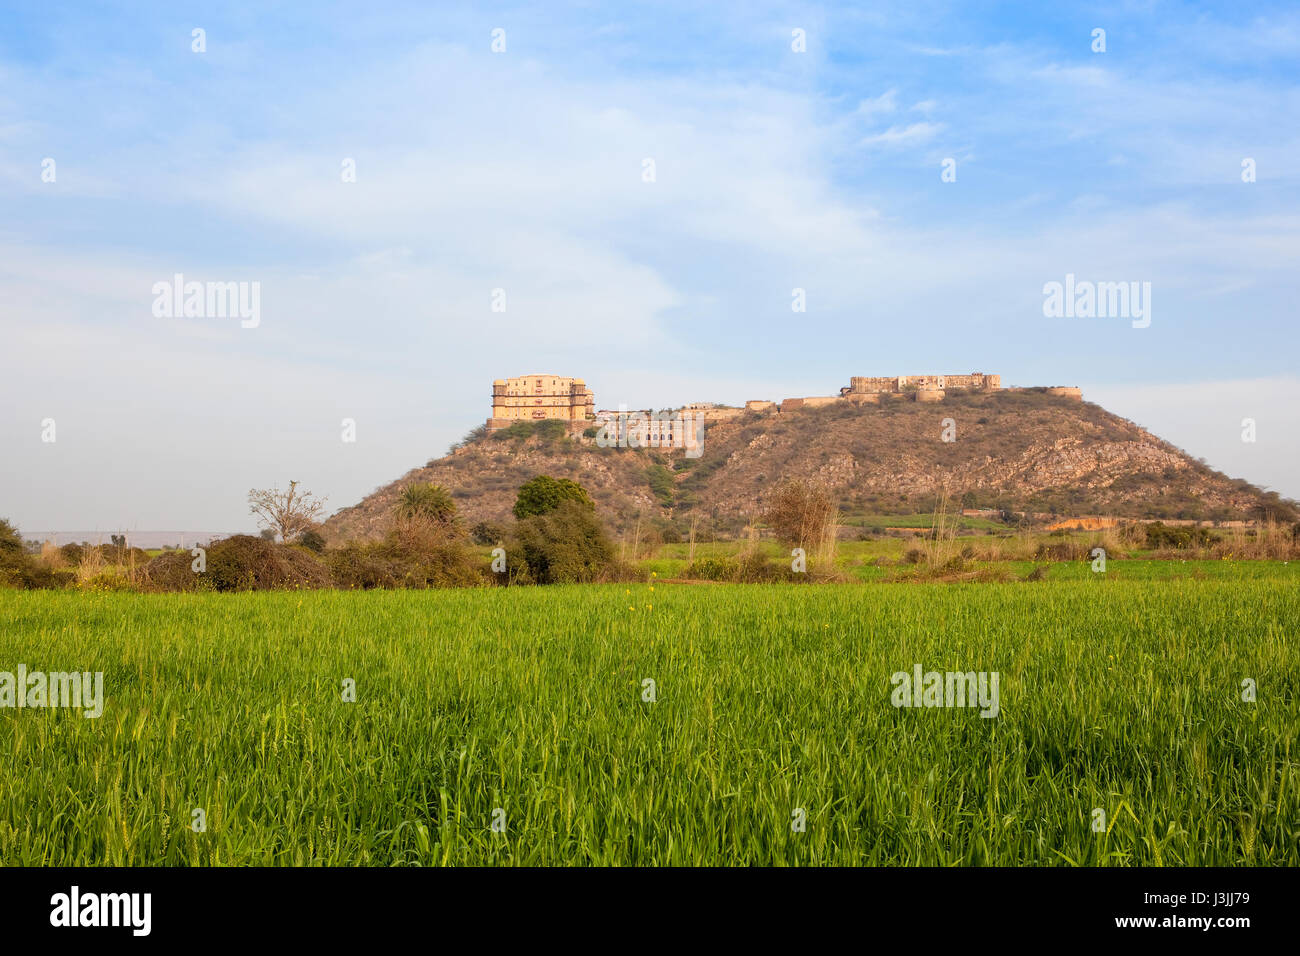 Das schöne Tijara Fort Hotel in Nordindien auf einem sandigen Hügel Weizenfelder unter einem blauen bewölkten Himmel im Frühling Stockfoto